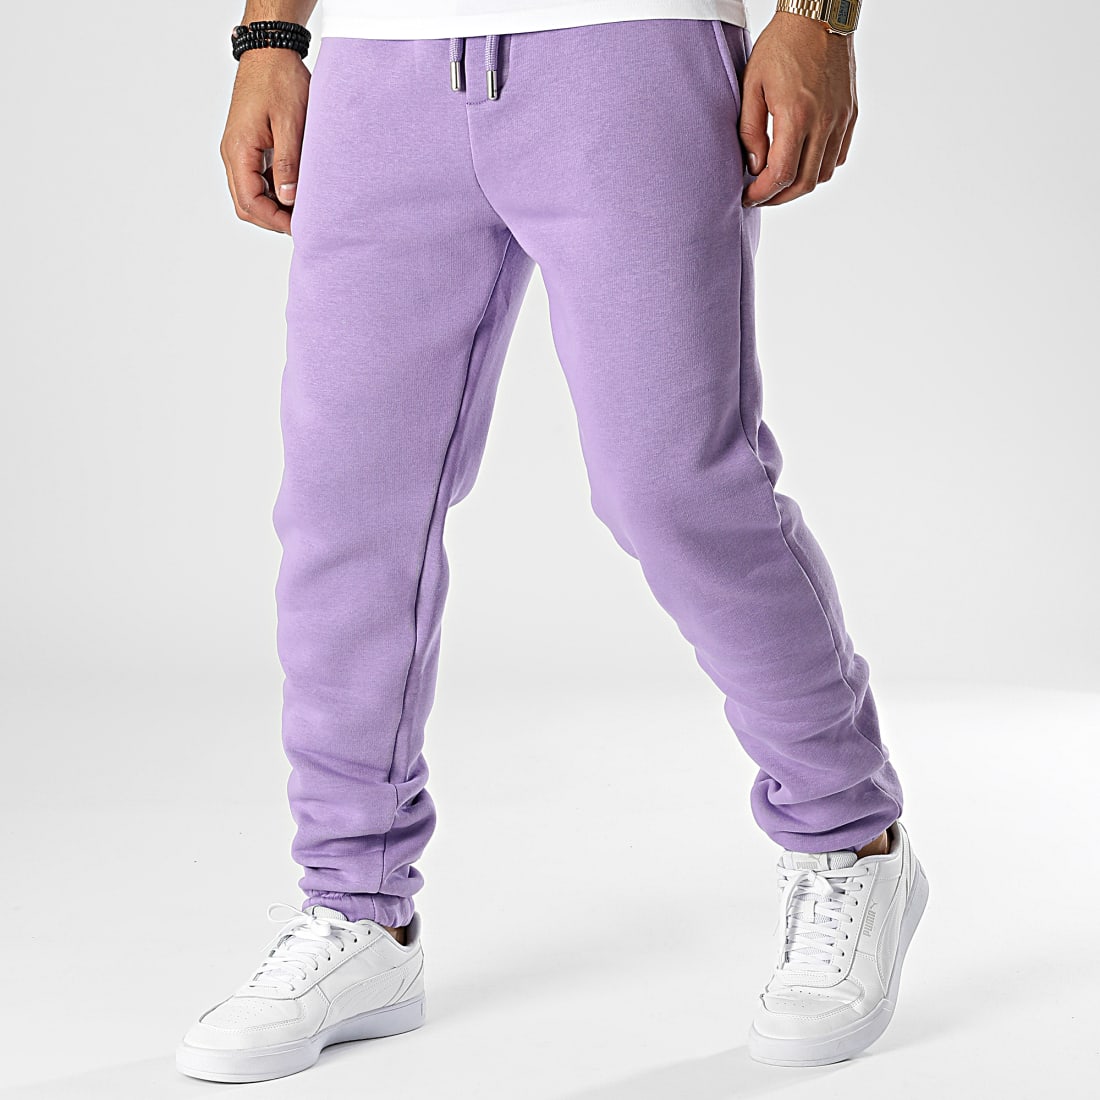 pantalon de jogging fille avec logo patine - camps united violet pantalons